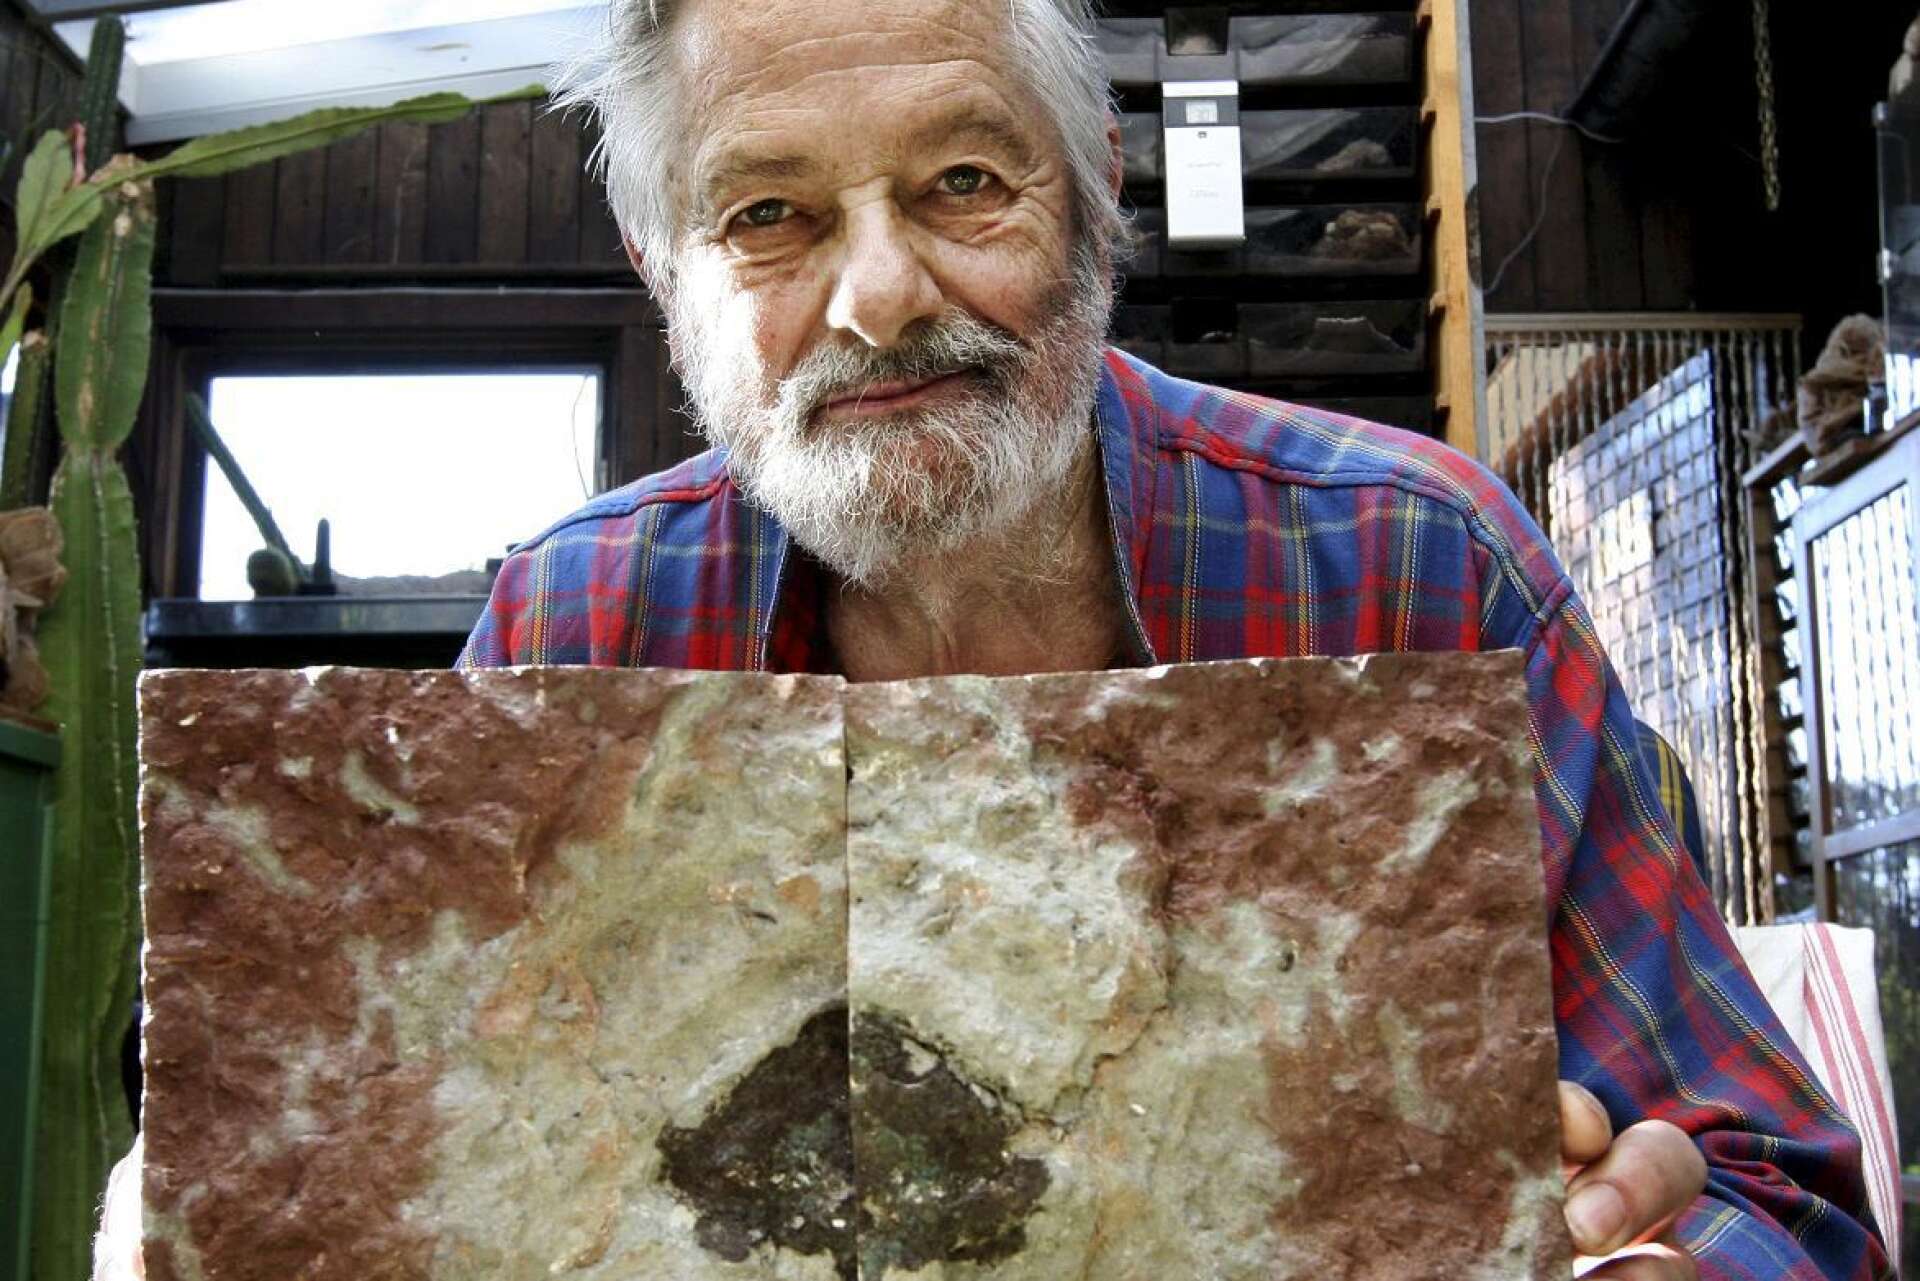 Mario Tassinari med sitt största fynd, den 470 miljoner år gamla meteoriten. Bilden togs 2014, ett par år innan den presenterades som en världssensation.